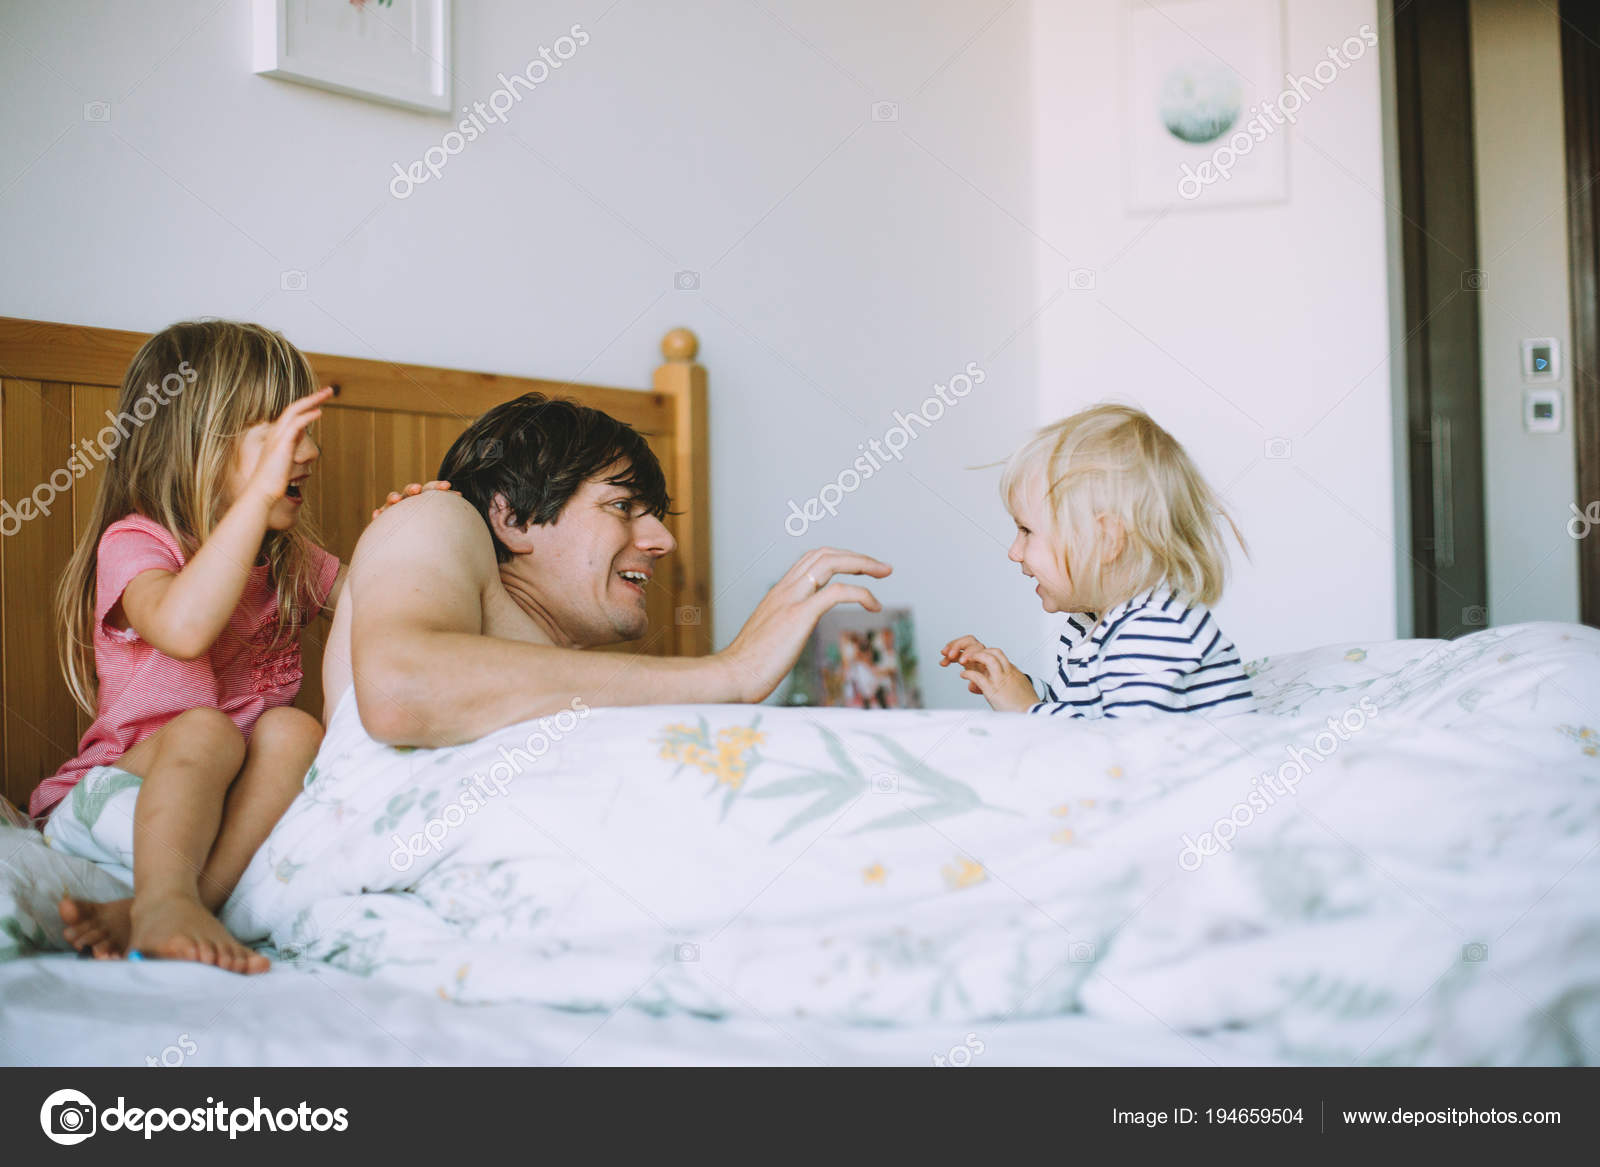 Друзья папаши трахают его дочь фото